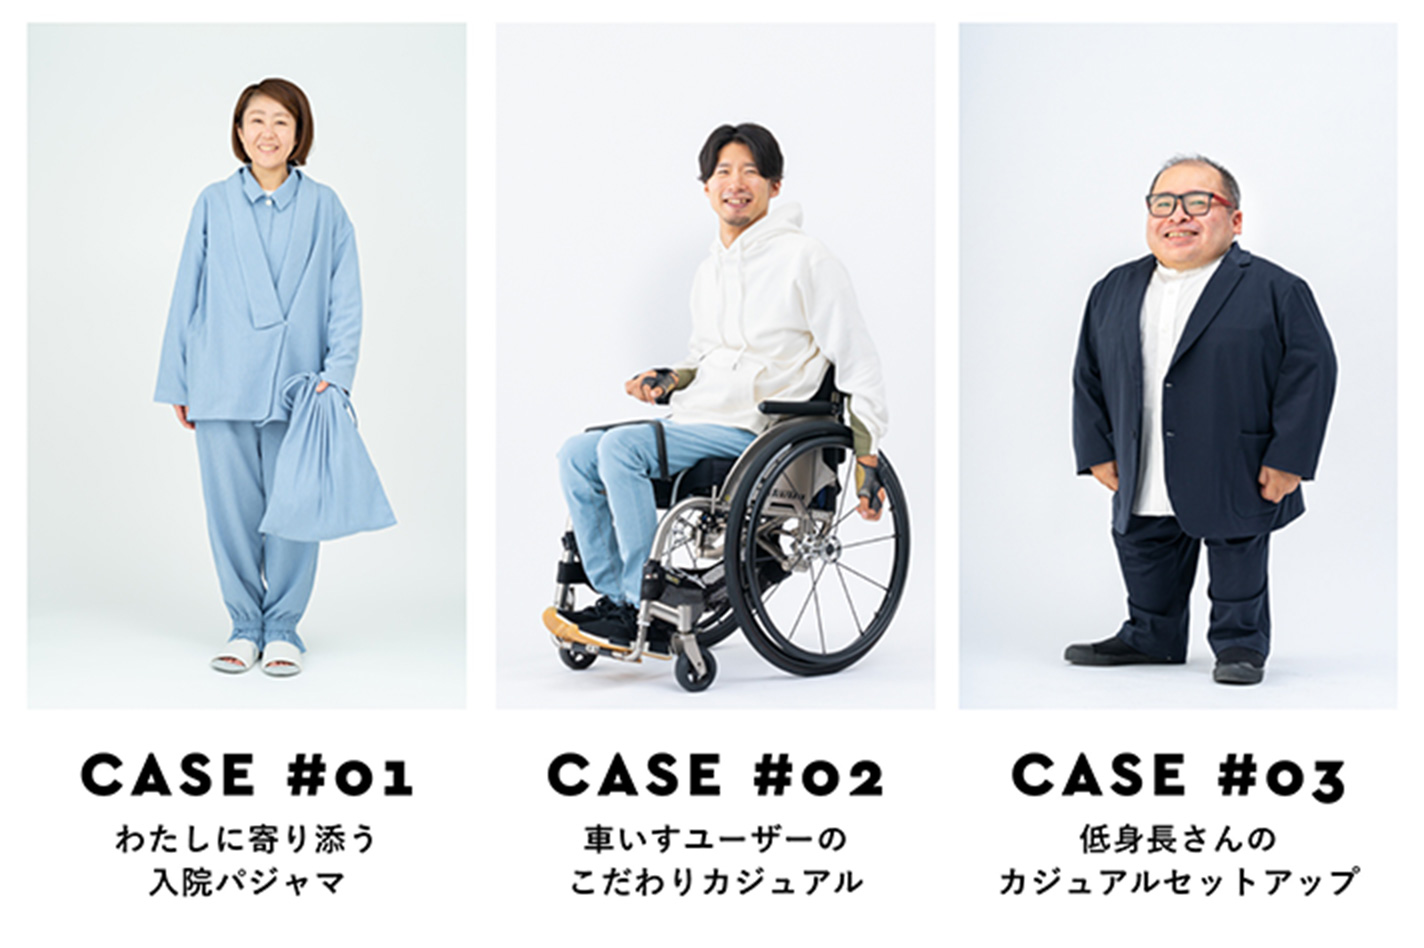 CASE #01 / CASE #02 / CASE #03